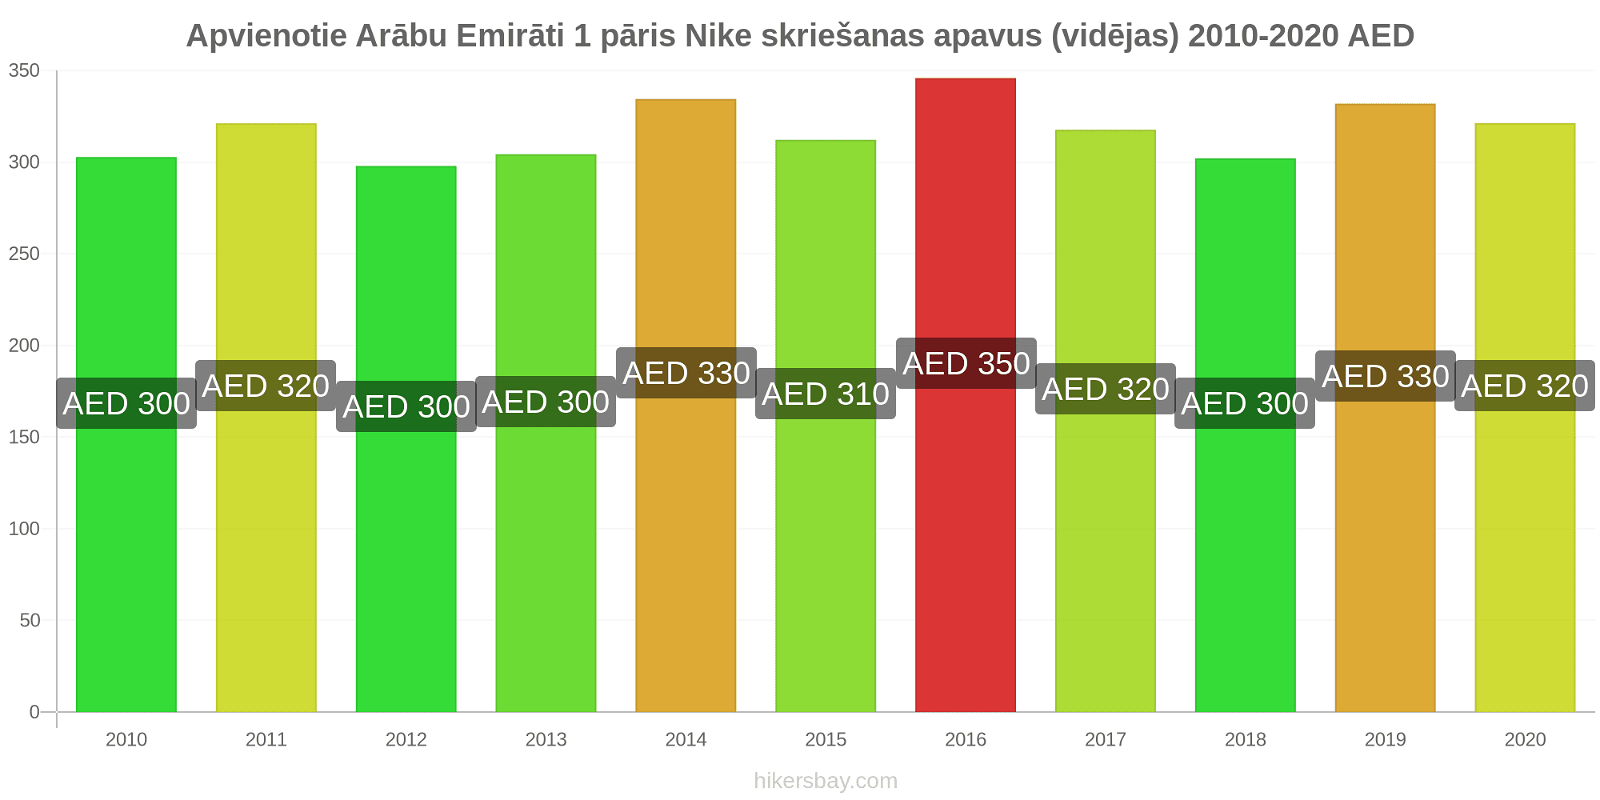 Apvienotie Arābu Emirāti cenu izmaiņas 1 pāris Nike skriešanas apavus (vidējas) hikersbay.com